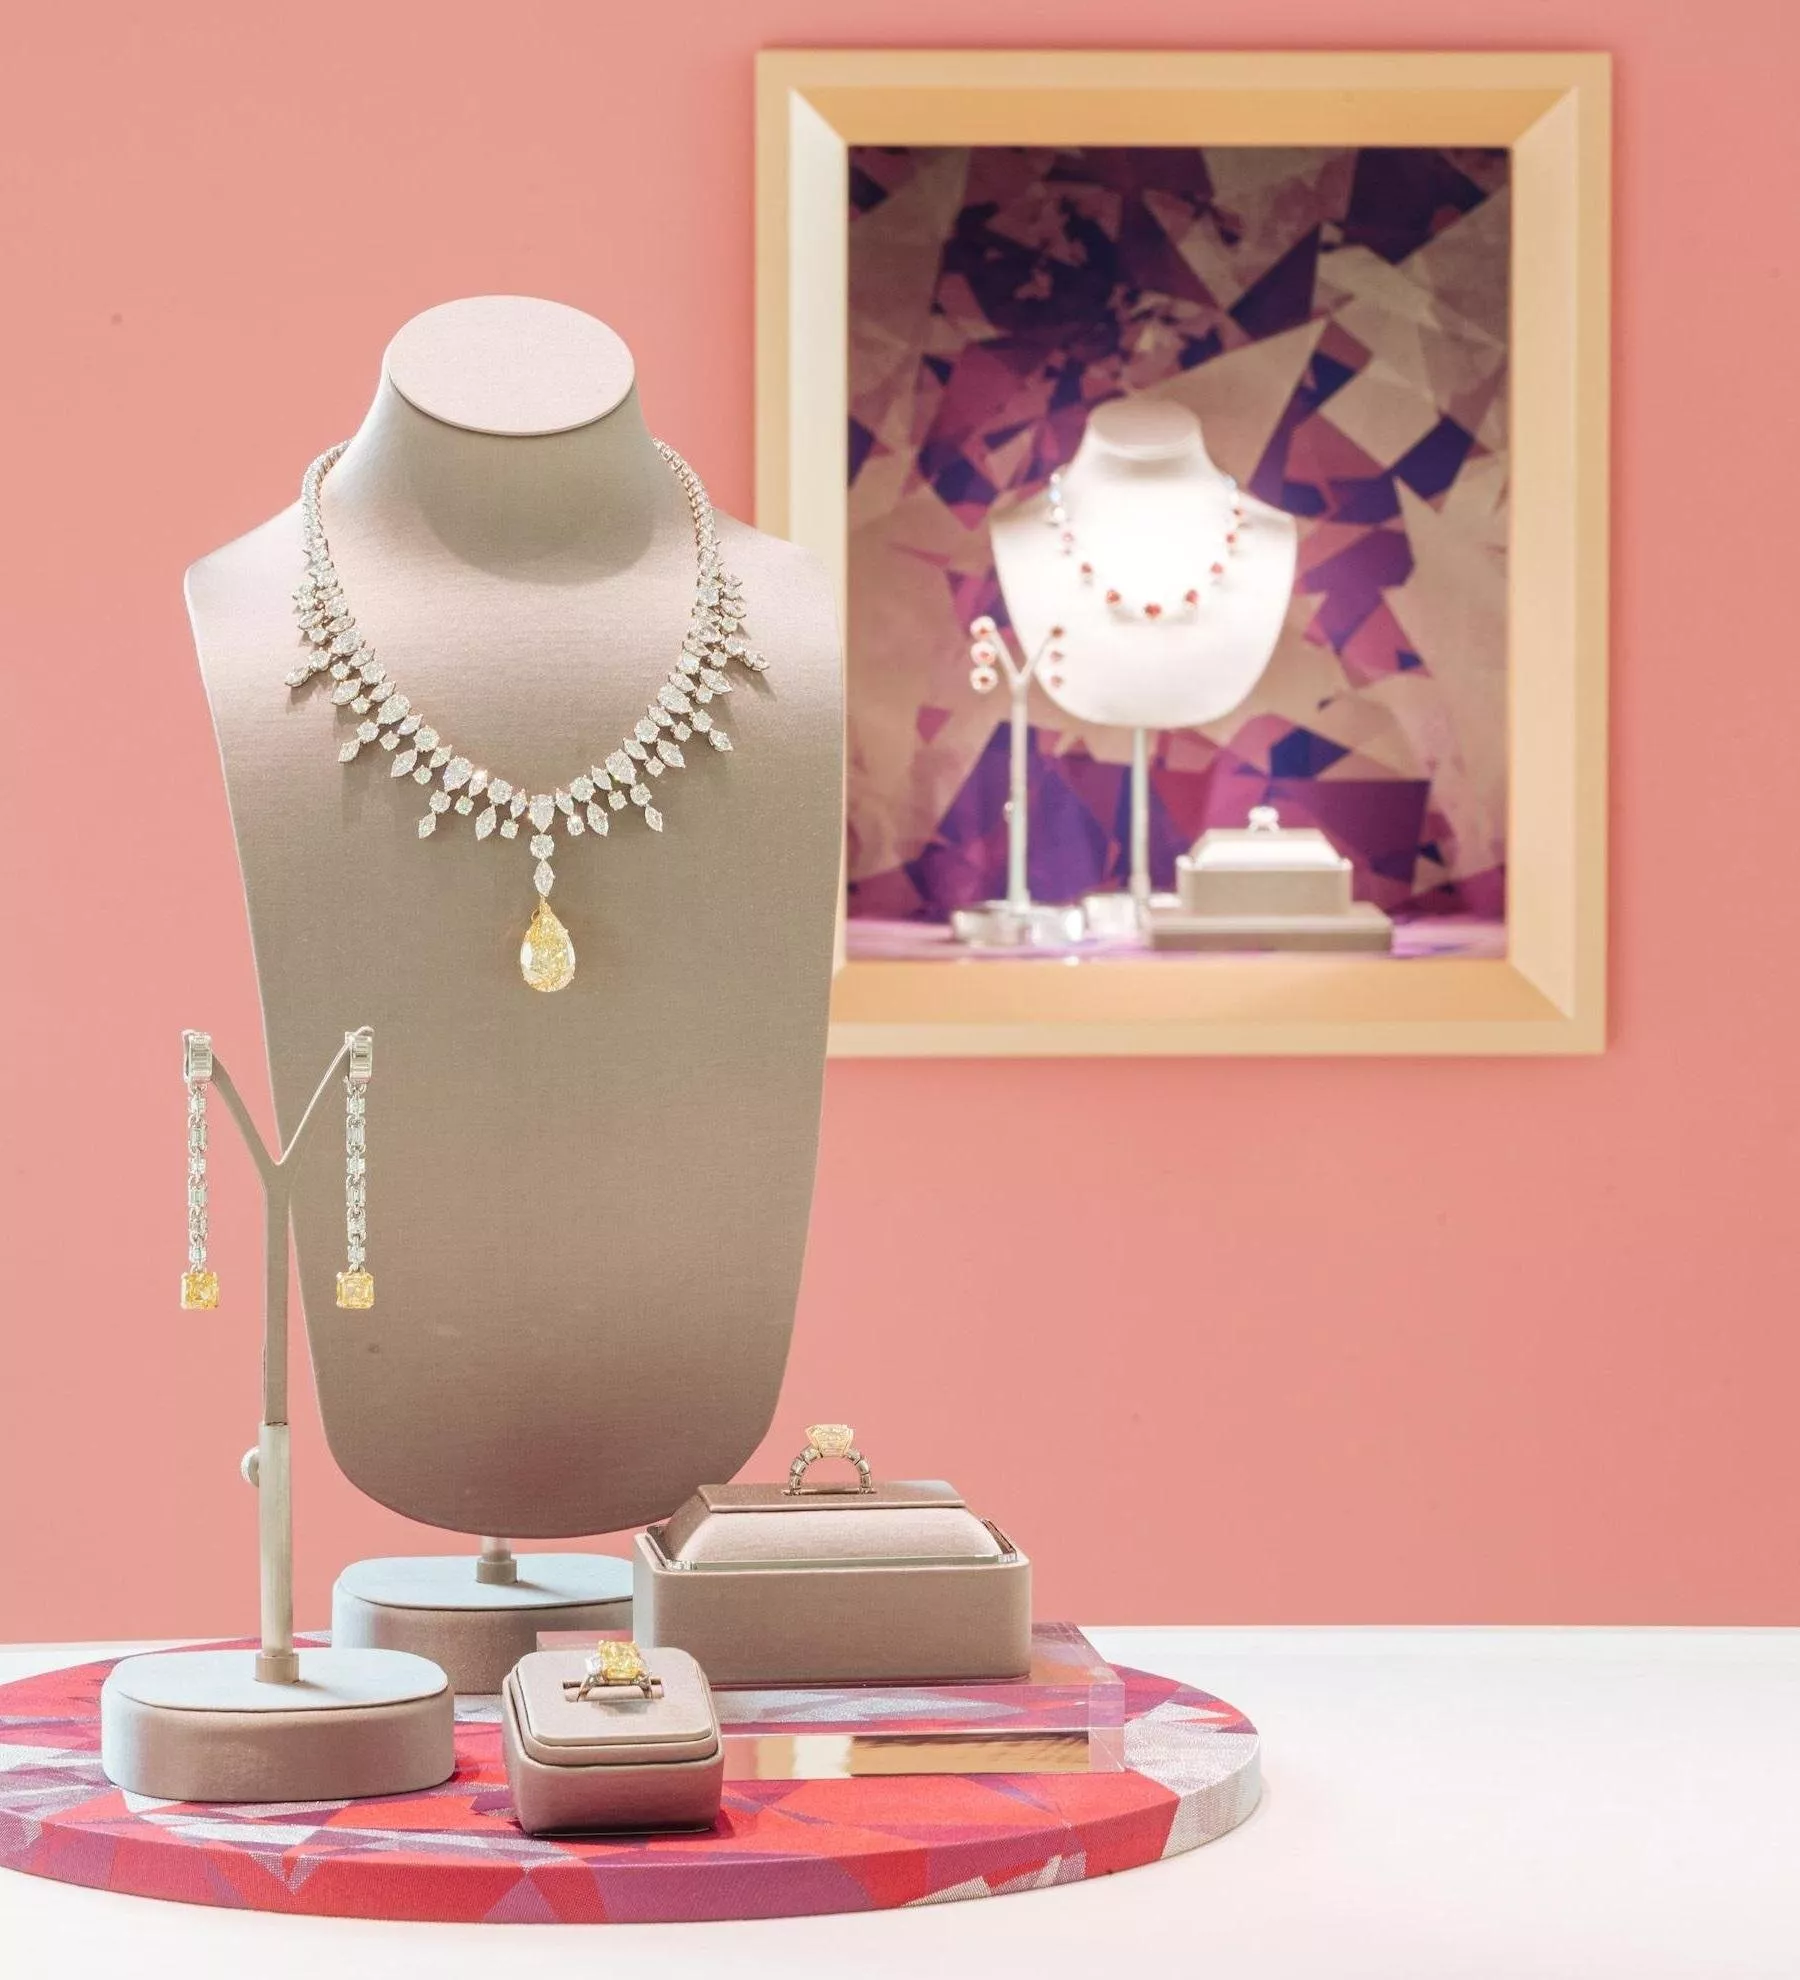 للمرة الأولى في الشرق الأوسط، علامة .Tiffany & Co تعرض أكثر من 200 قطعة من المجوهرات الراقية